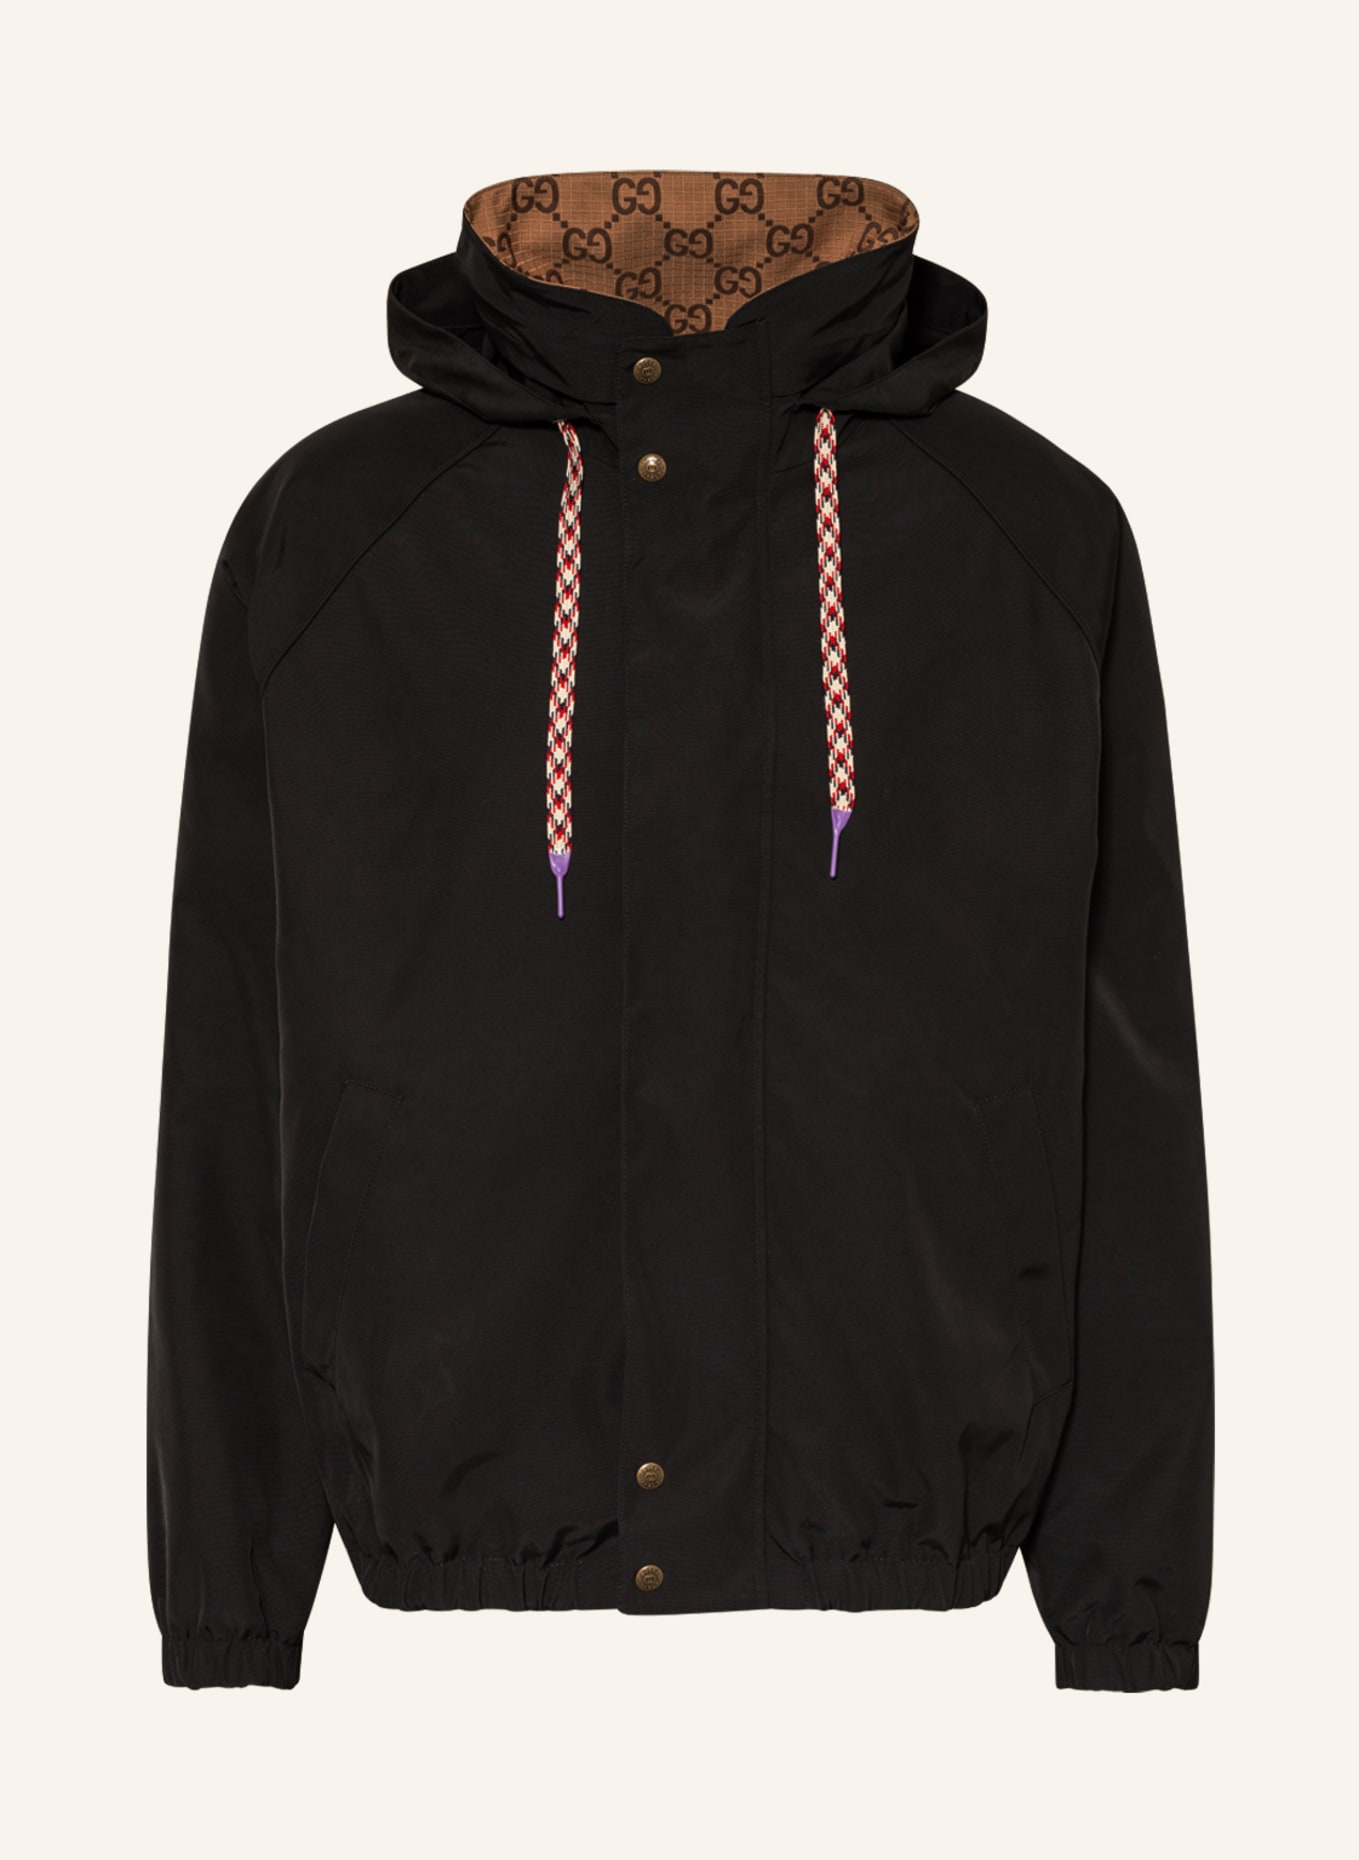 GUCCI Reversible jacket, Color: BLACK/ CAMEL (Image 1)